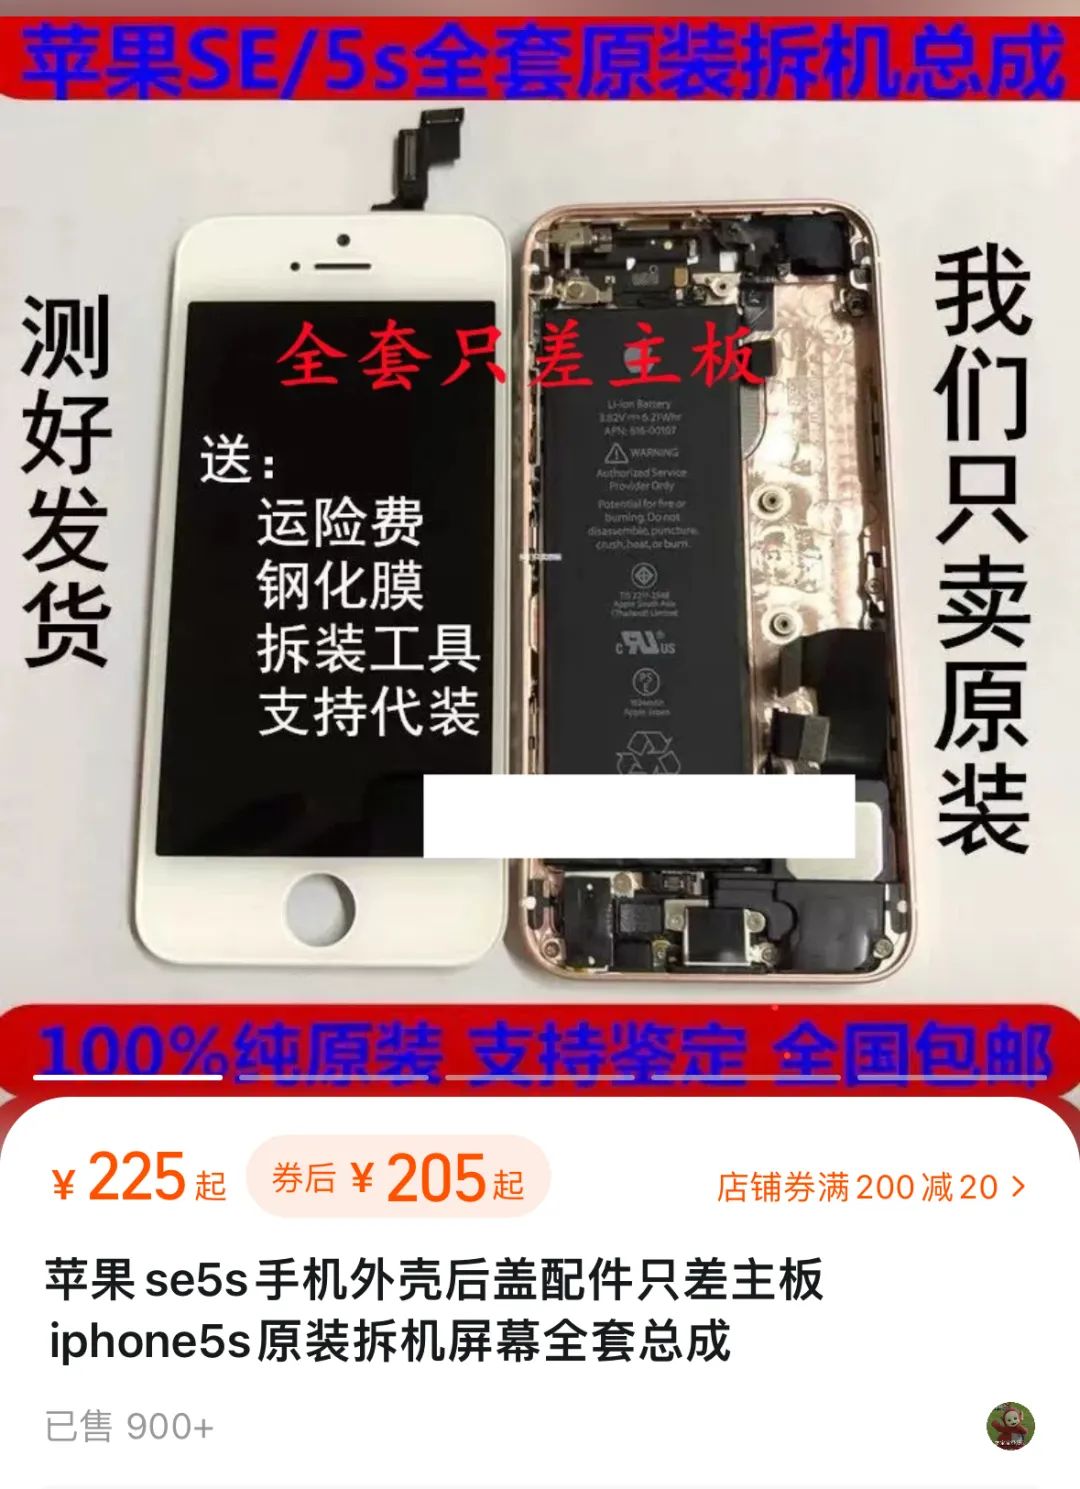 iPhone SE 4 想要大卖，只能这样了……-36氪